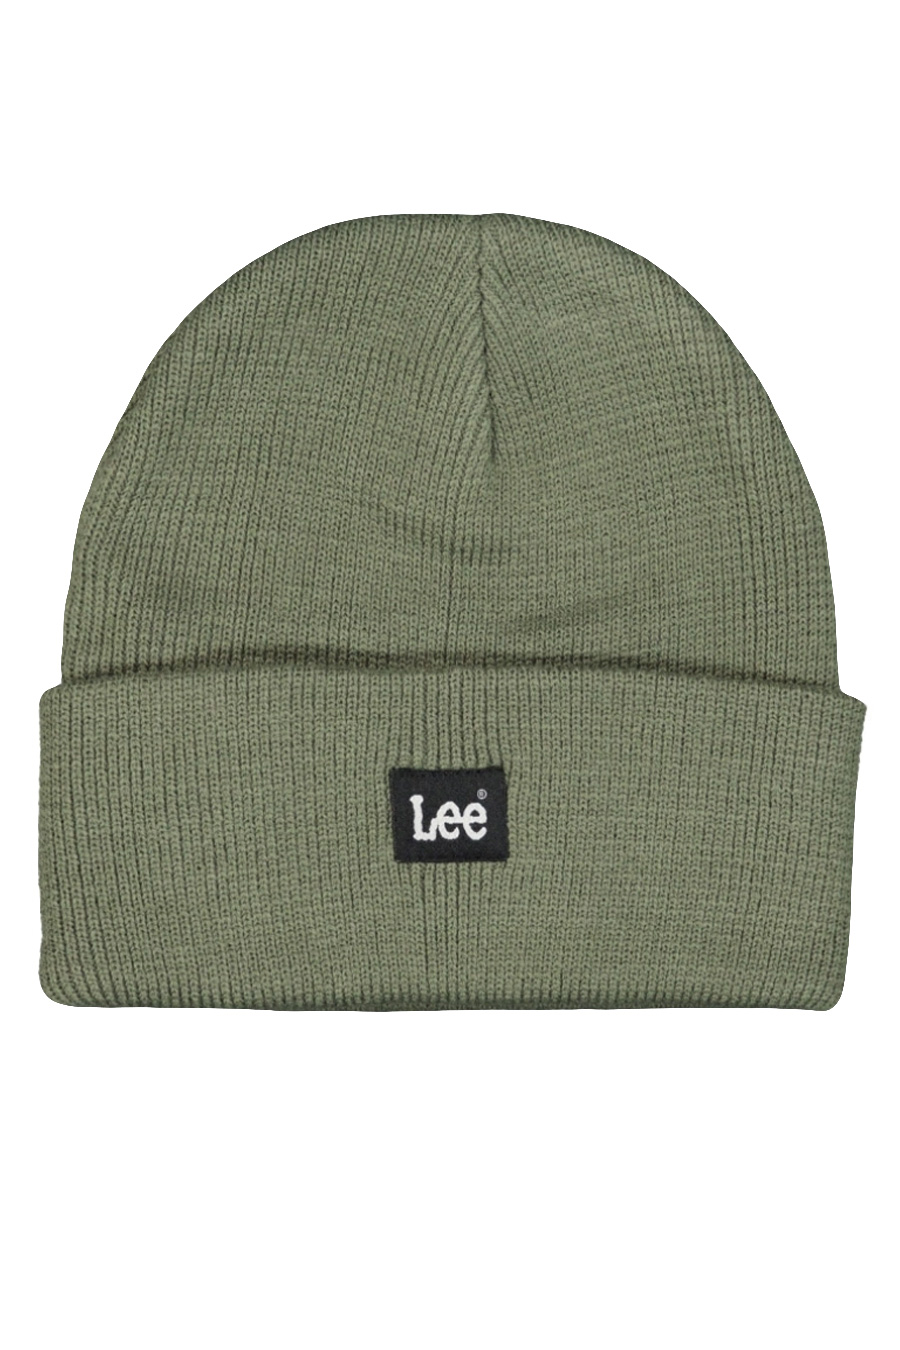 Žieminė kepurė LEE 112339001